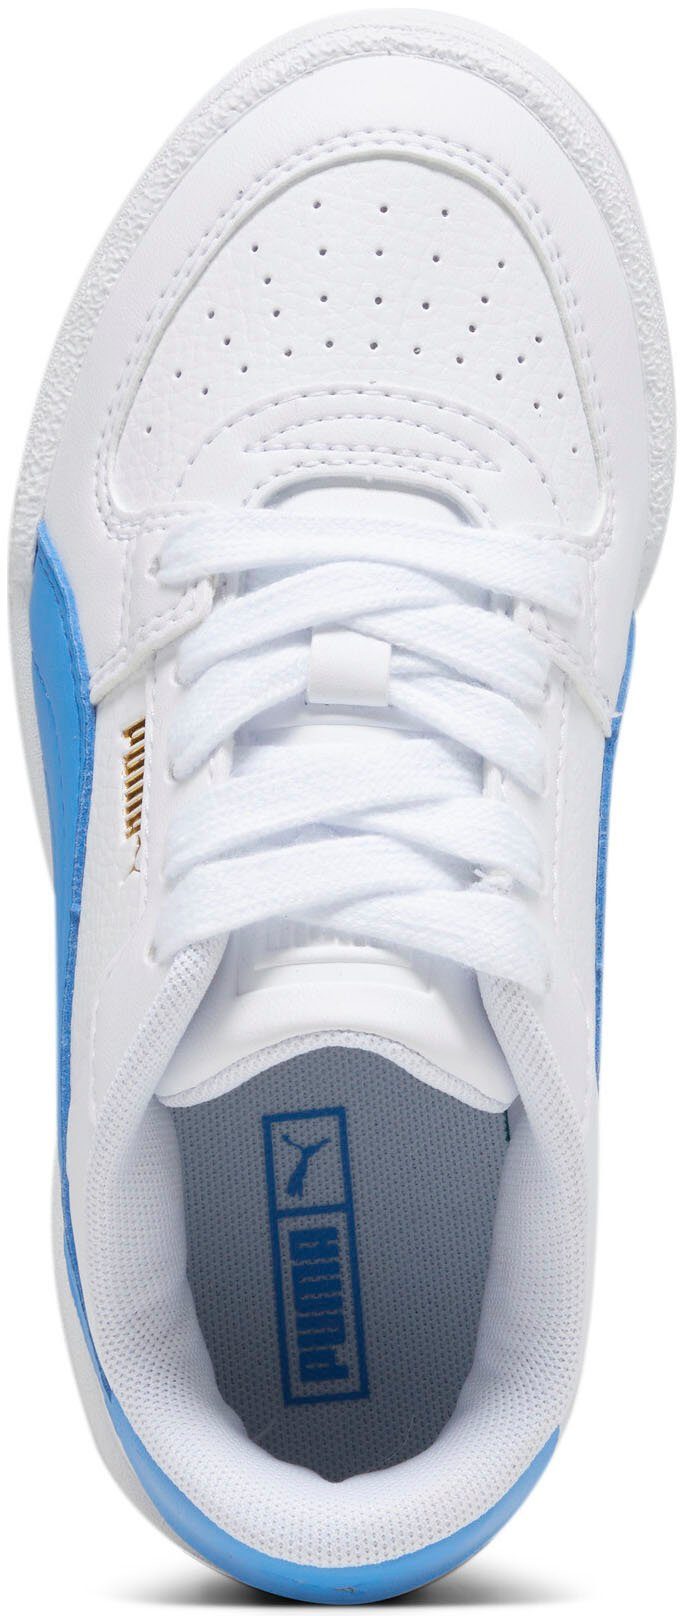 PUMA CA PRO CLASSIC PS Blue Sneaker PUMA White-Regal